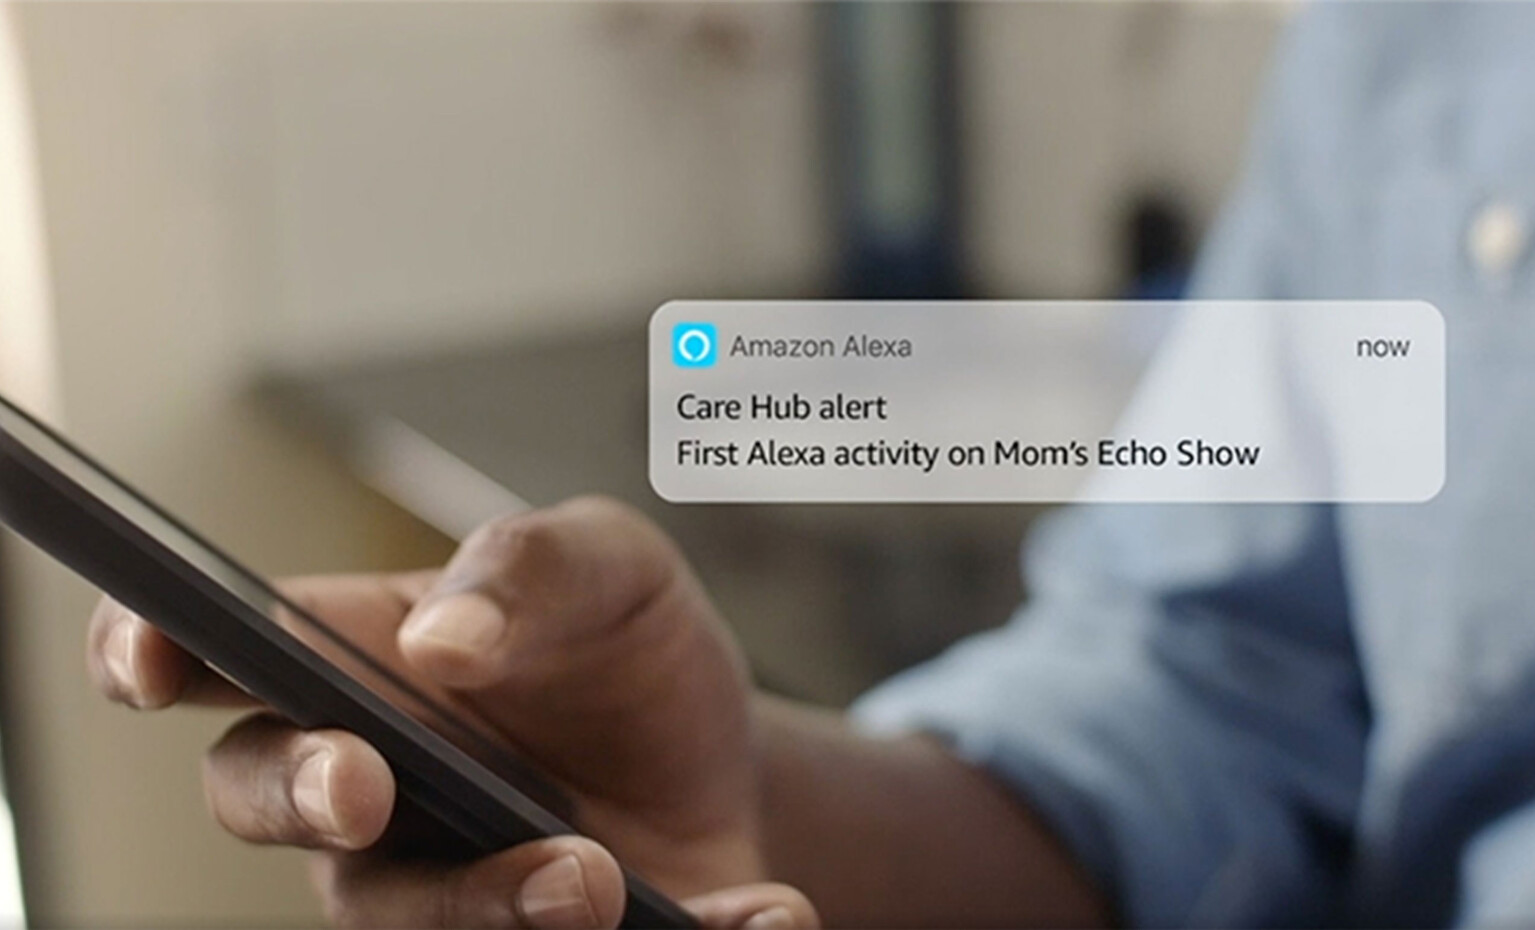 Naheaufnahme einer Person, wie sie ihr Handy hält. Es wird eine Nachricht von Amazon's Alexa gezeigt, welche lautet: "Care Hub alert - First Alexa activity on Mom's Echo Show."